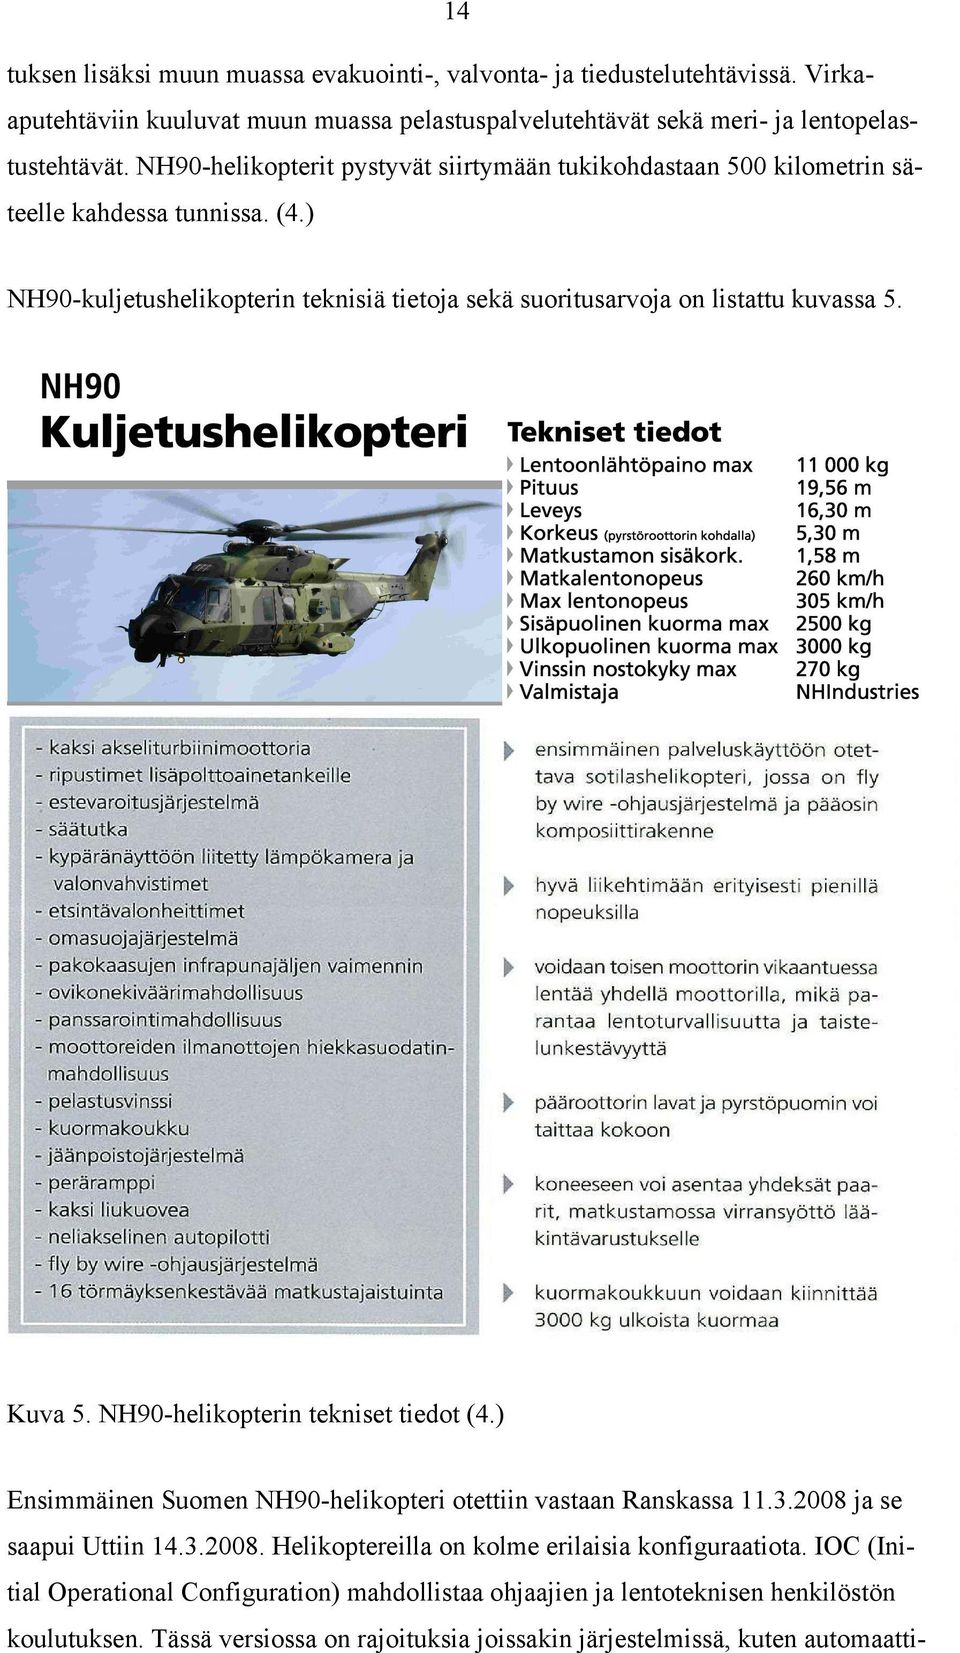 Kuva 5. NH90-helikopterin tekniset tiedot (4.) Ensimmäinen Suomen NH90-helikopteri otettiin vastaan Ranskassa 11.3.2008 ja se saapui Uttiin 14.3.2008. Helikoptereilla on kolme erilaisia konfiguraatiota.